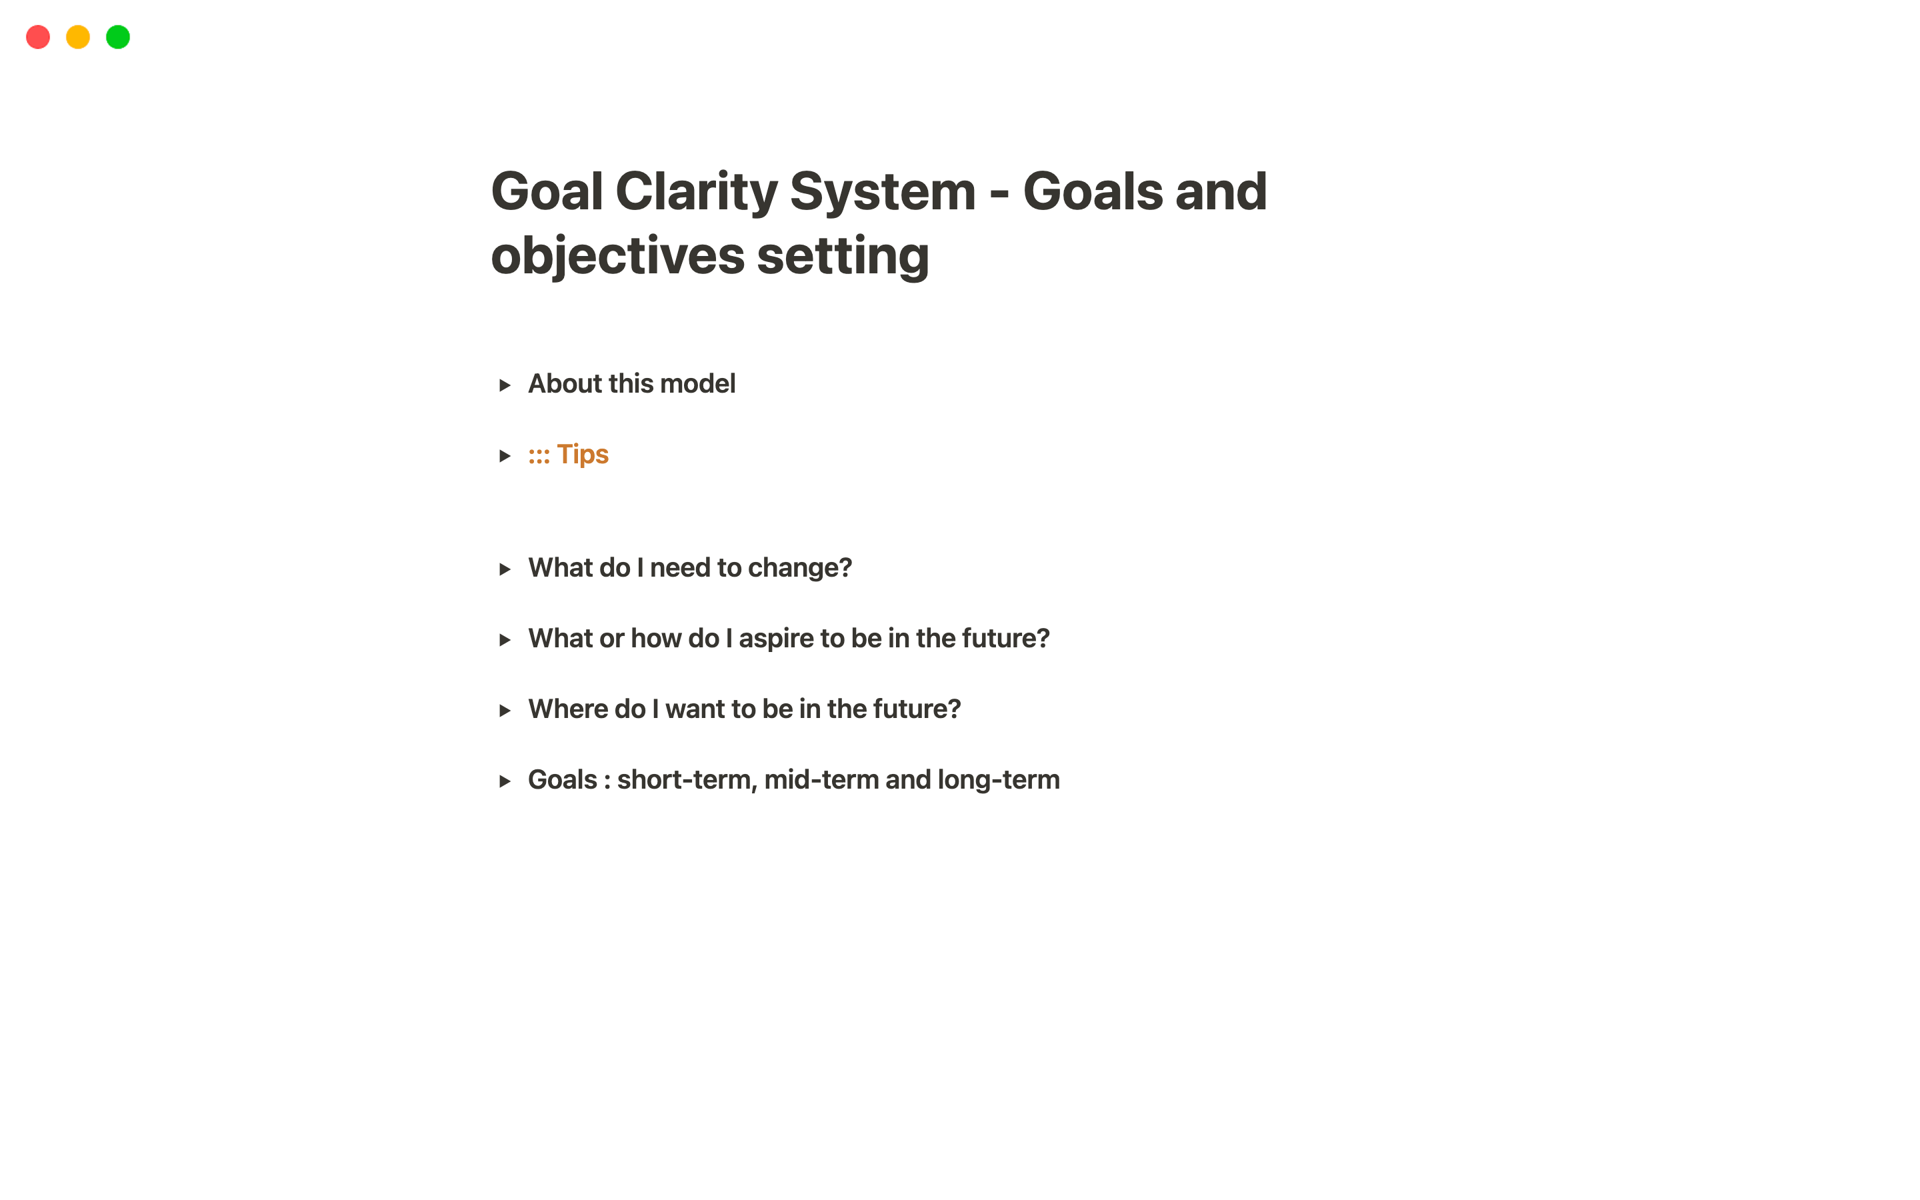 Aperçu du modèle de Goal Clarity System - Goals and objectives setting